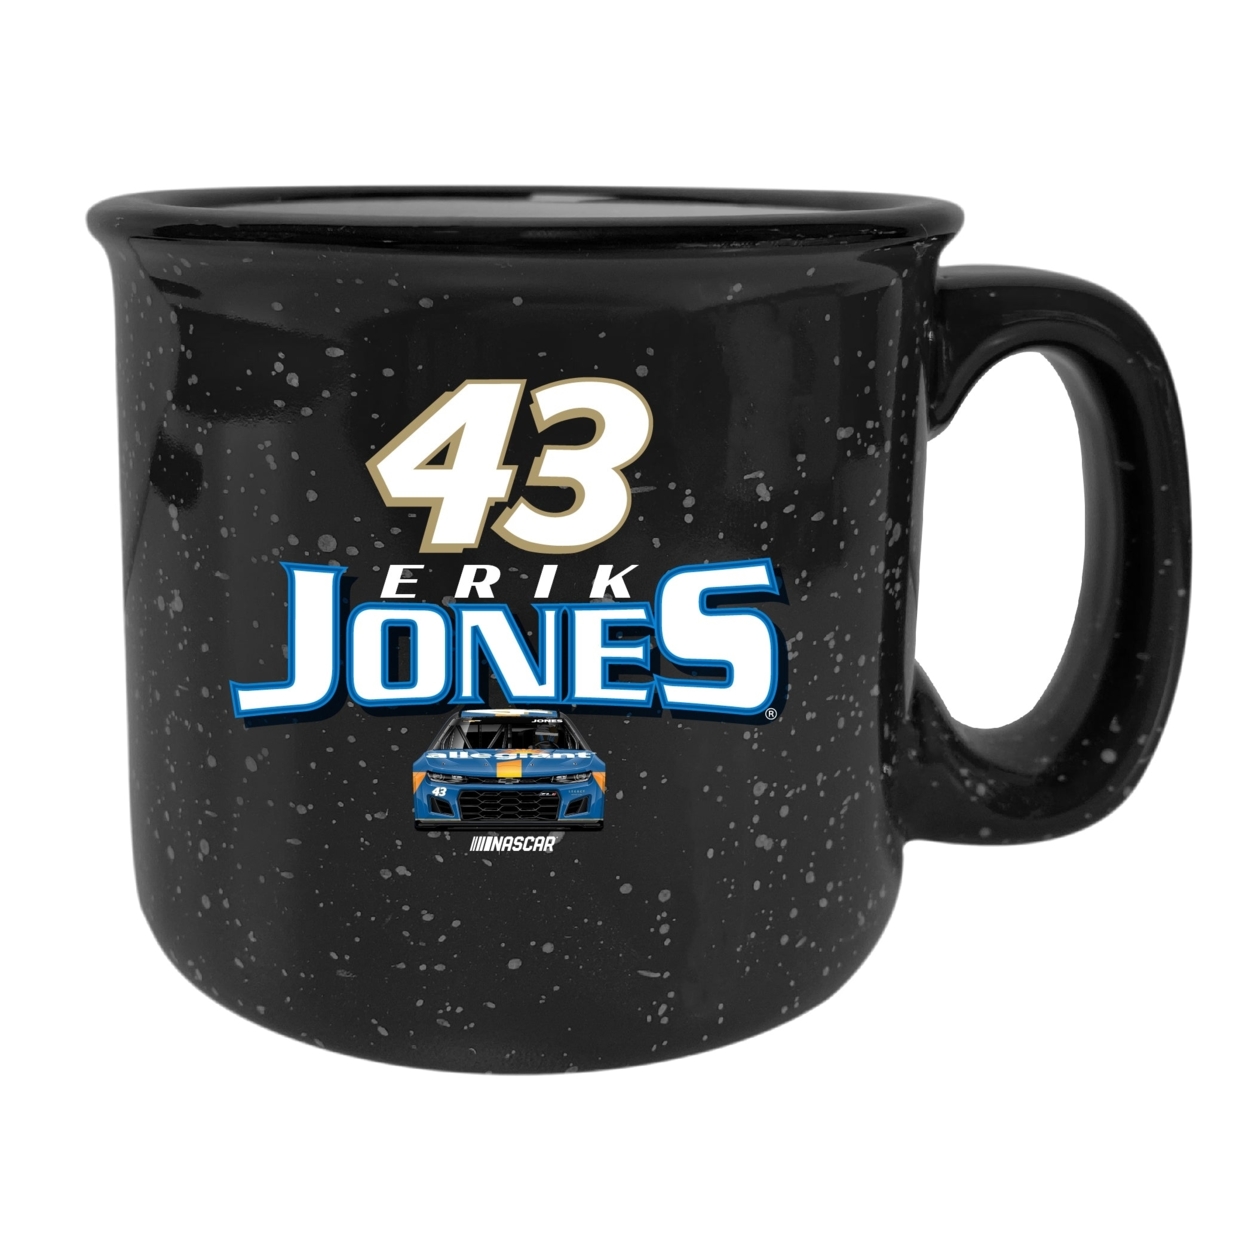 #43 Erik Jones Officially Licensed Ceramic Camper Mug 16oz - Black